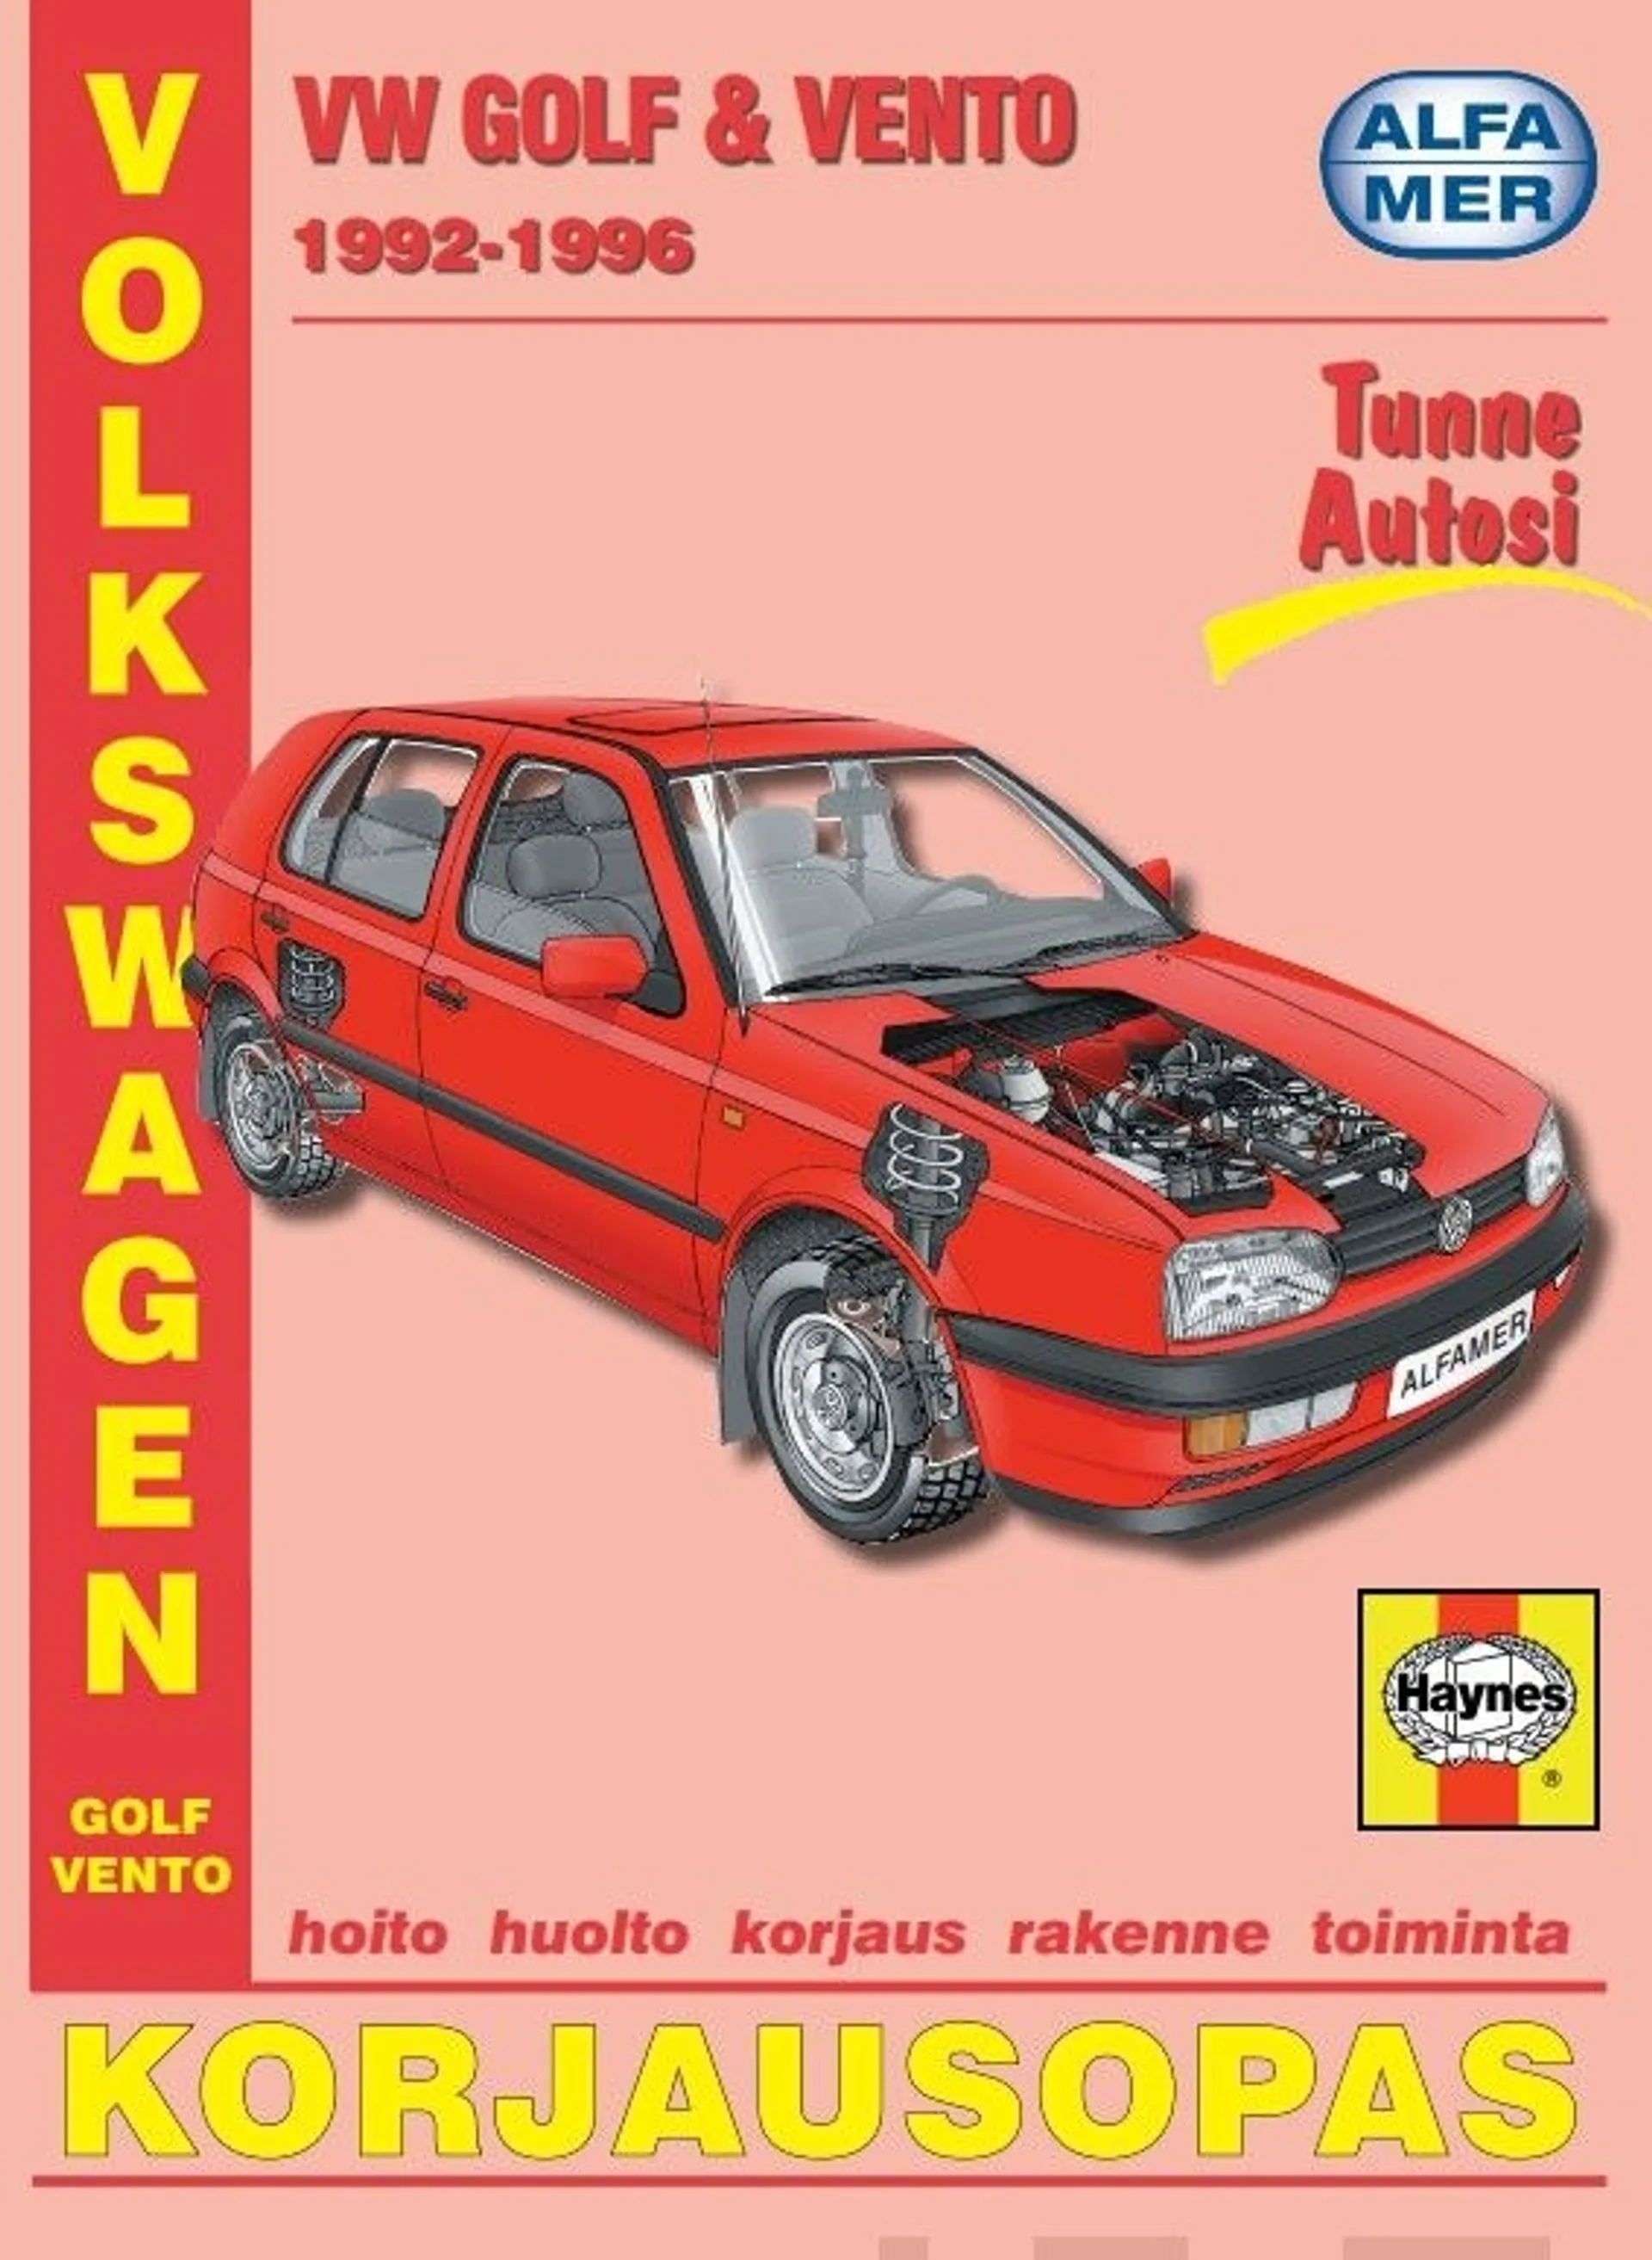 Coombs, Volkswagen Golf & Vento 1992-1996